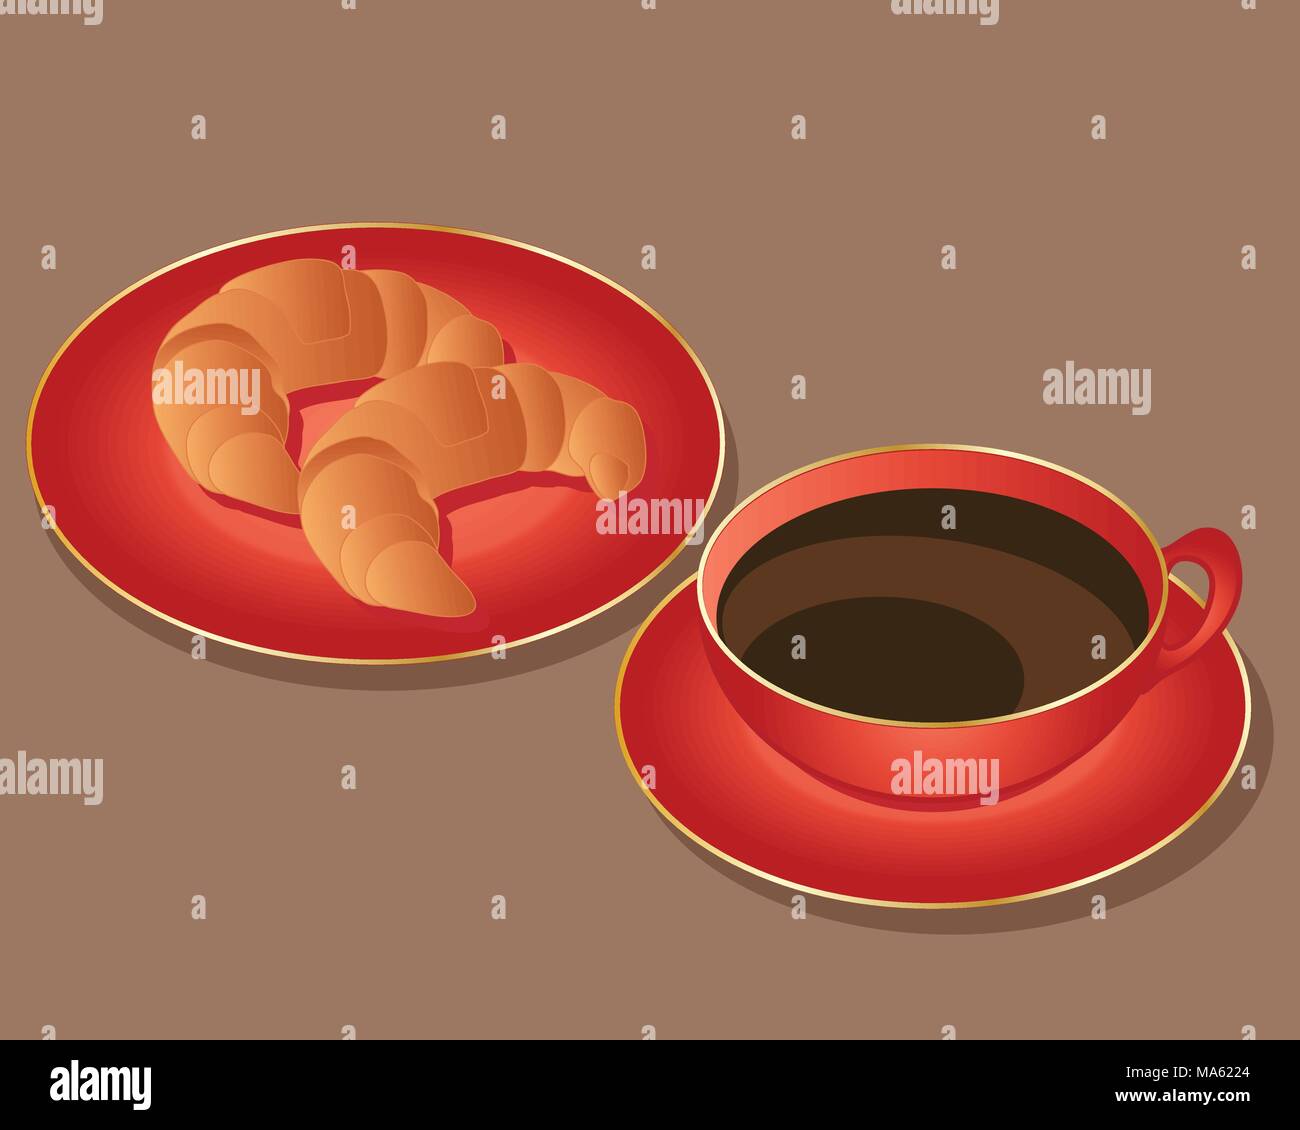 Un vecteur illustration en format eps 10 d'une assiette de croissants et d'une tasse de café sur la vaisselle rouge avec garniture d'or sur un fond de chocolat Illustration de Vecteur